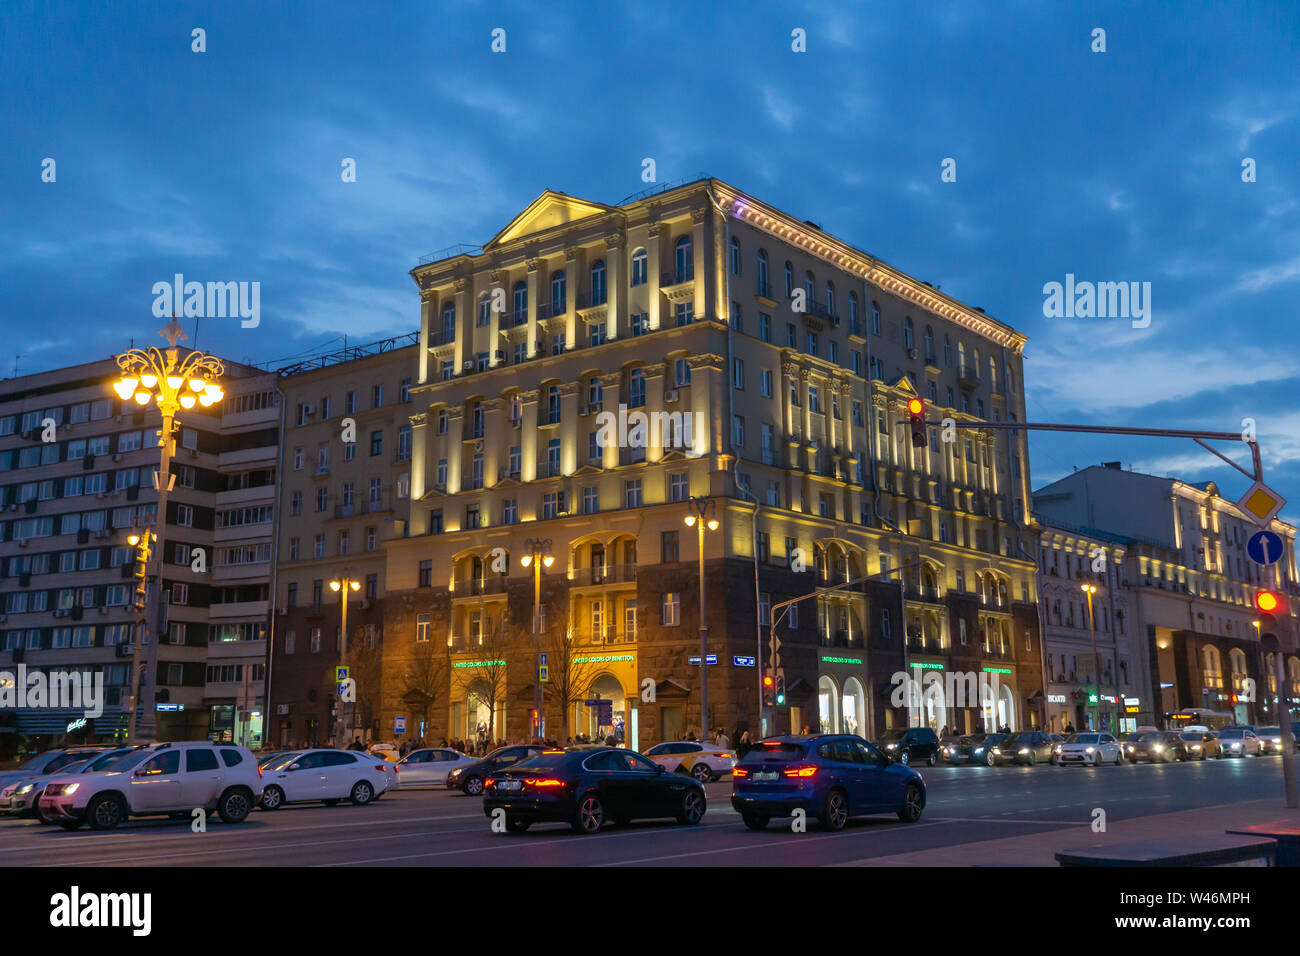 Moscou, Russie - le 20 avril 2019 : la rue Tverskaya, la nuit, avec des bâtiments historiques dans la région de Moscou, Russie. Banque D'Images